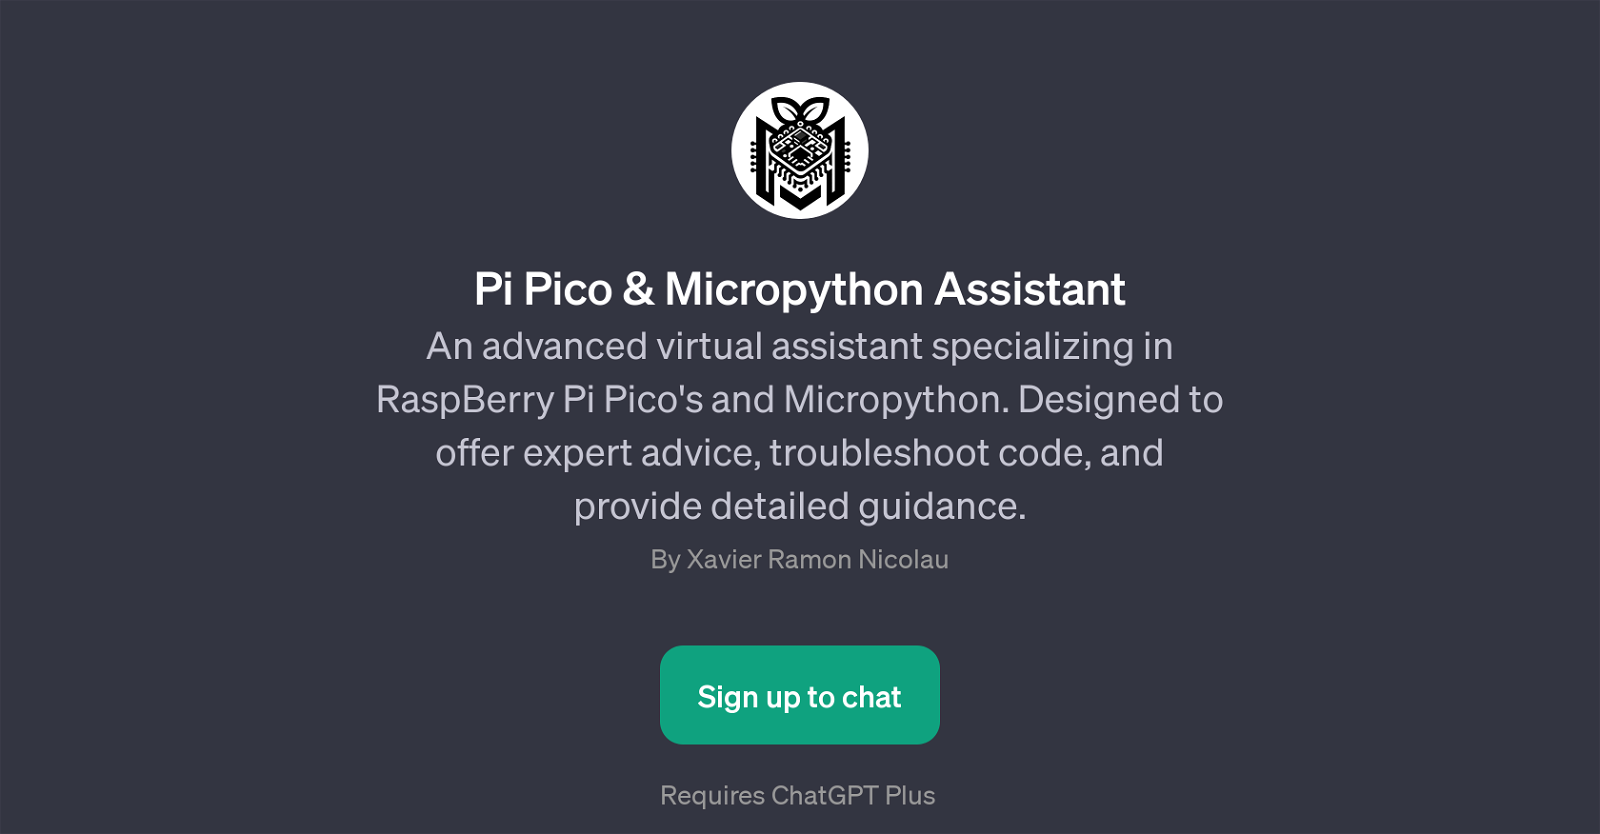 Pi Pico & Micropython Assistant website